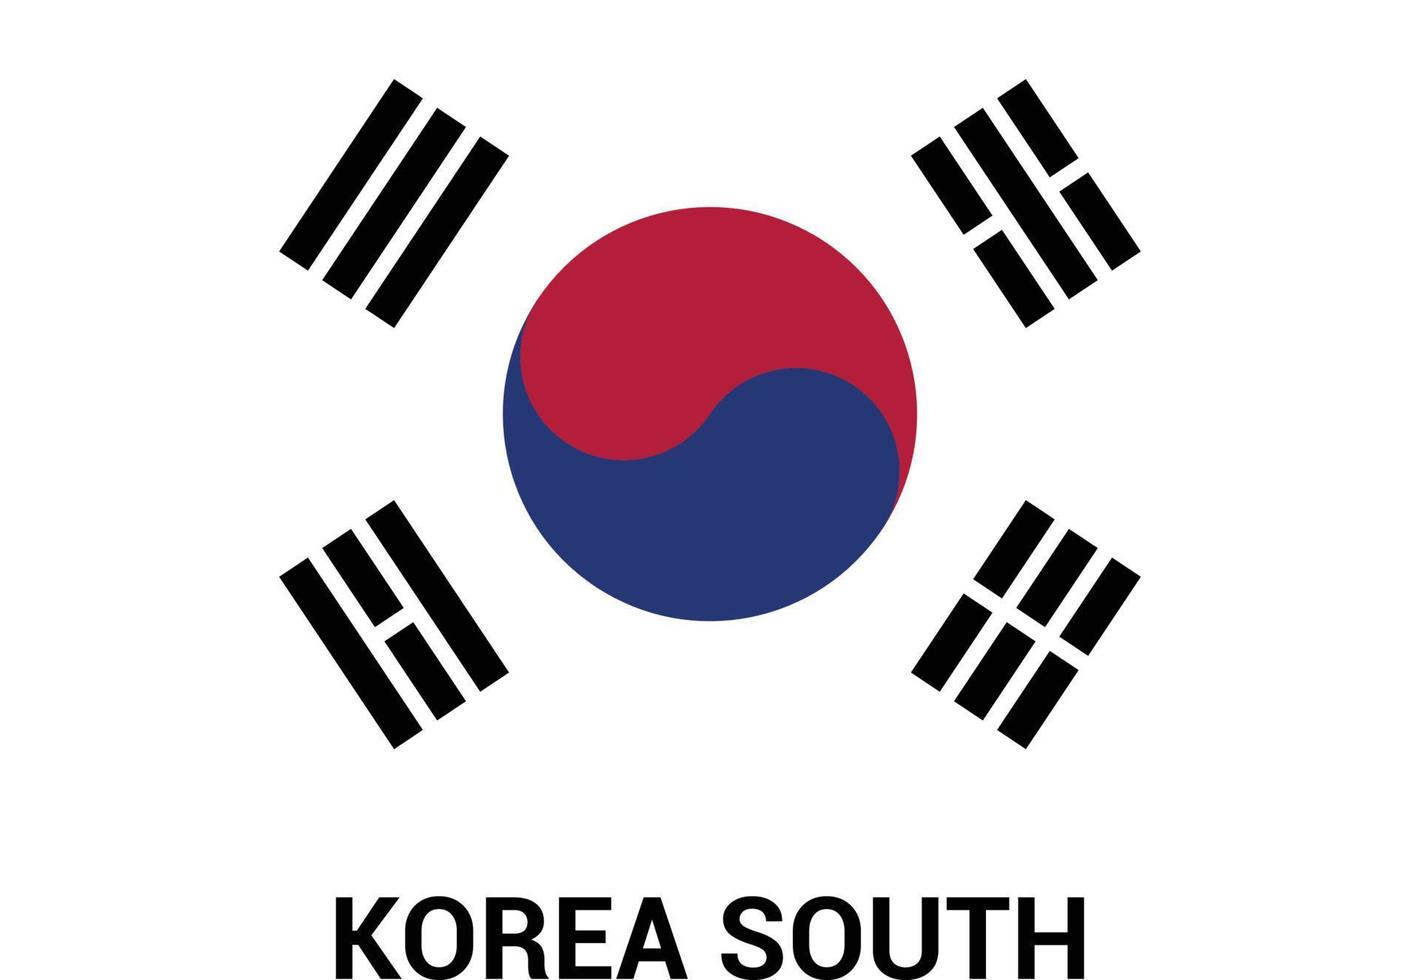 Südkorea-Flaggen-Designvektor vektor